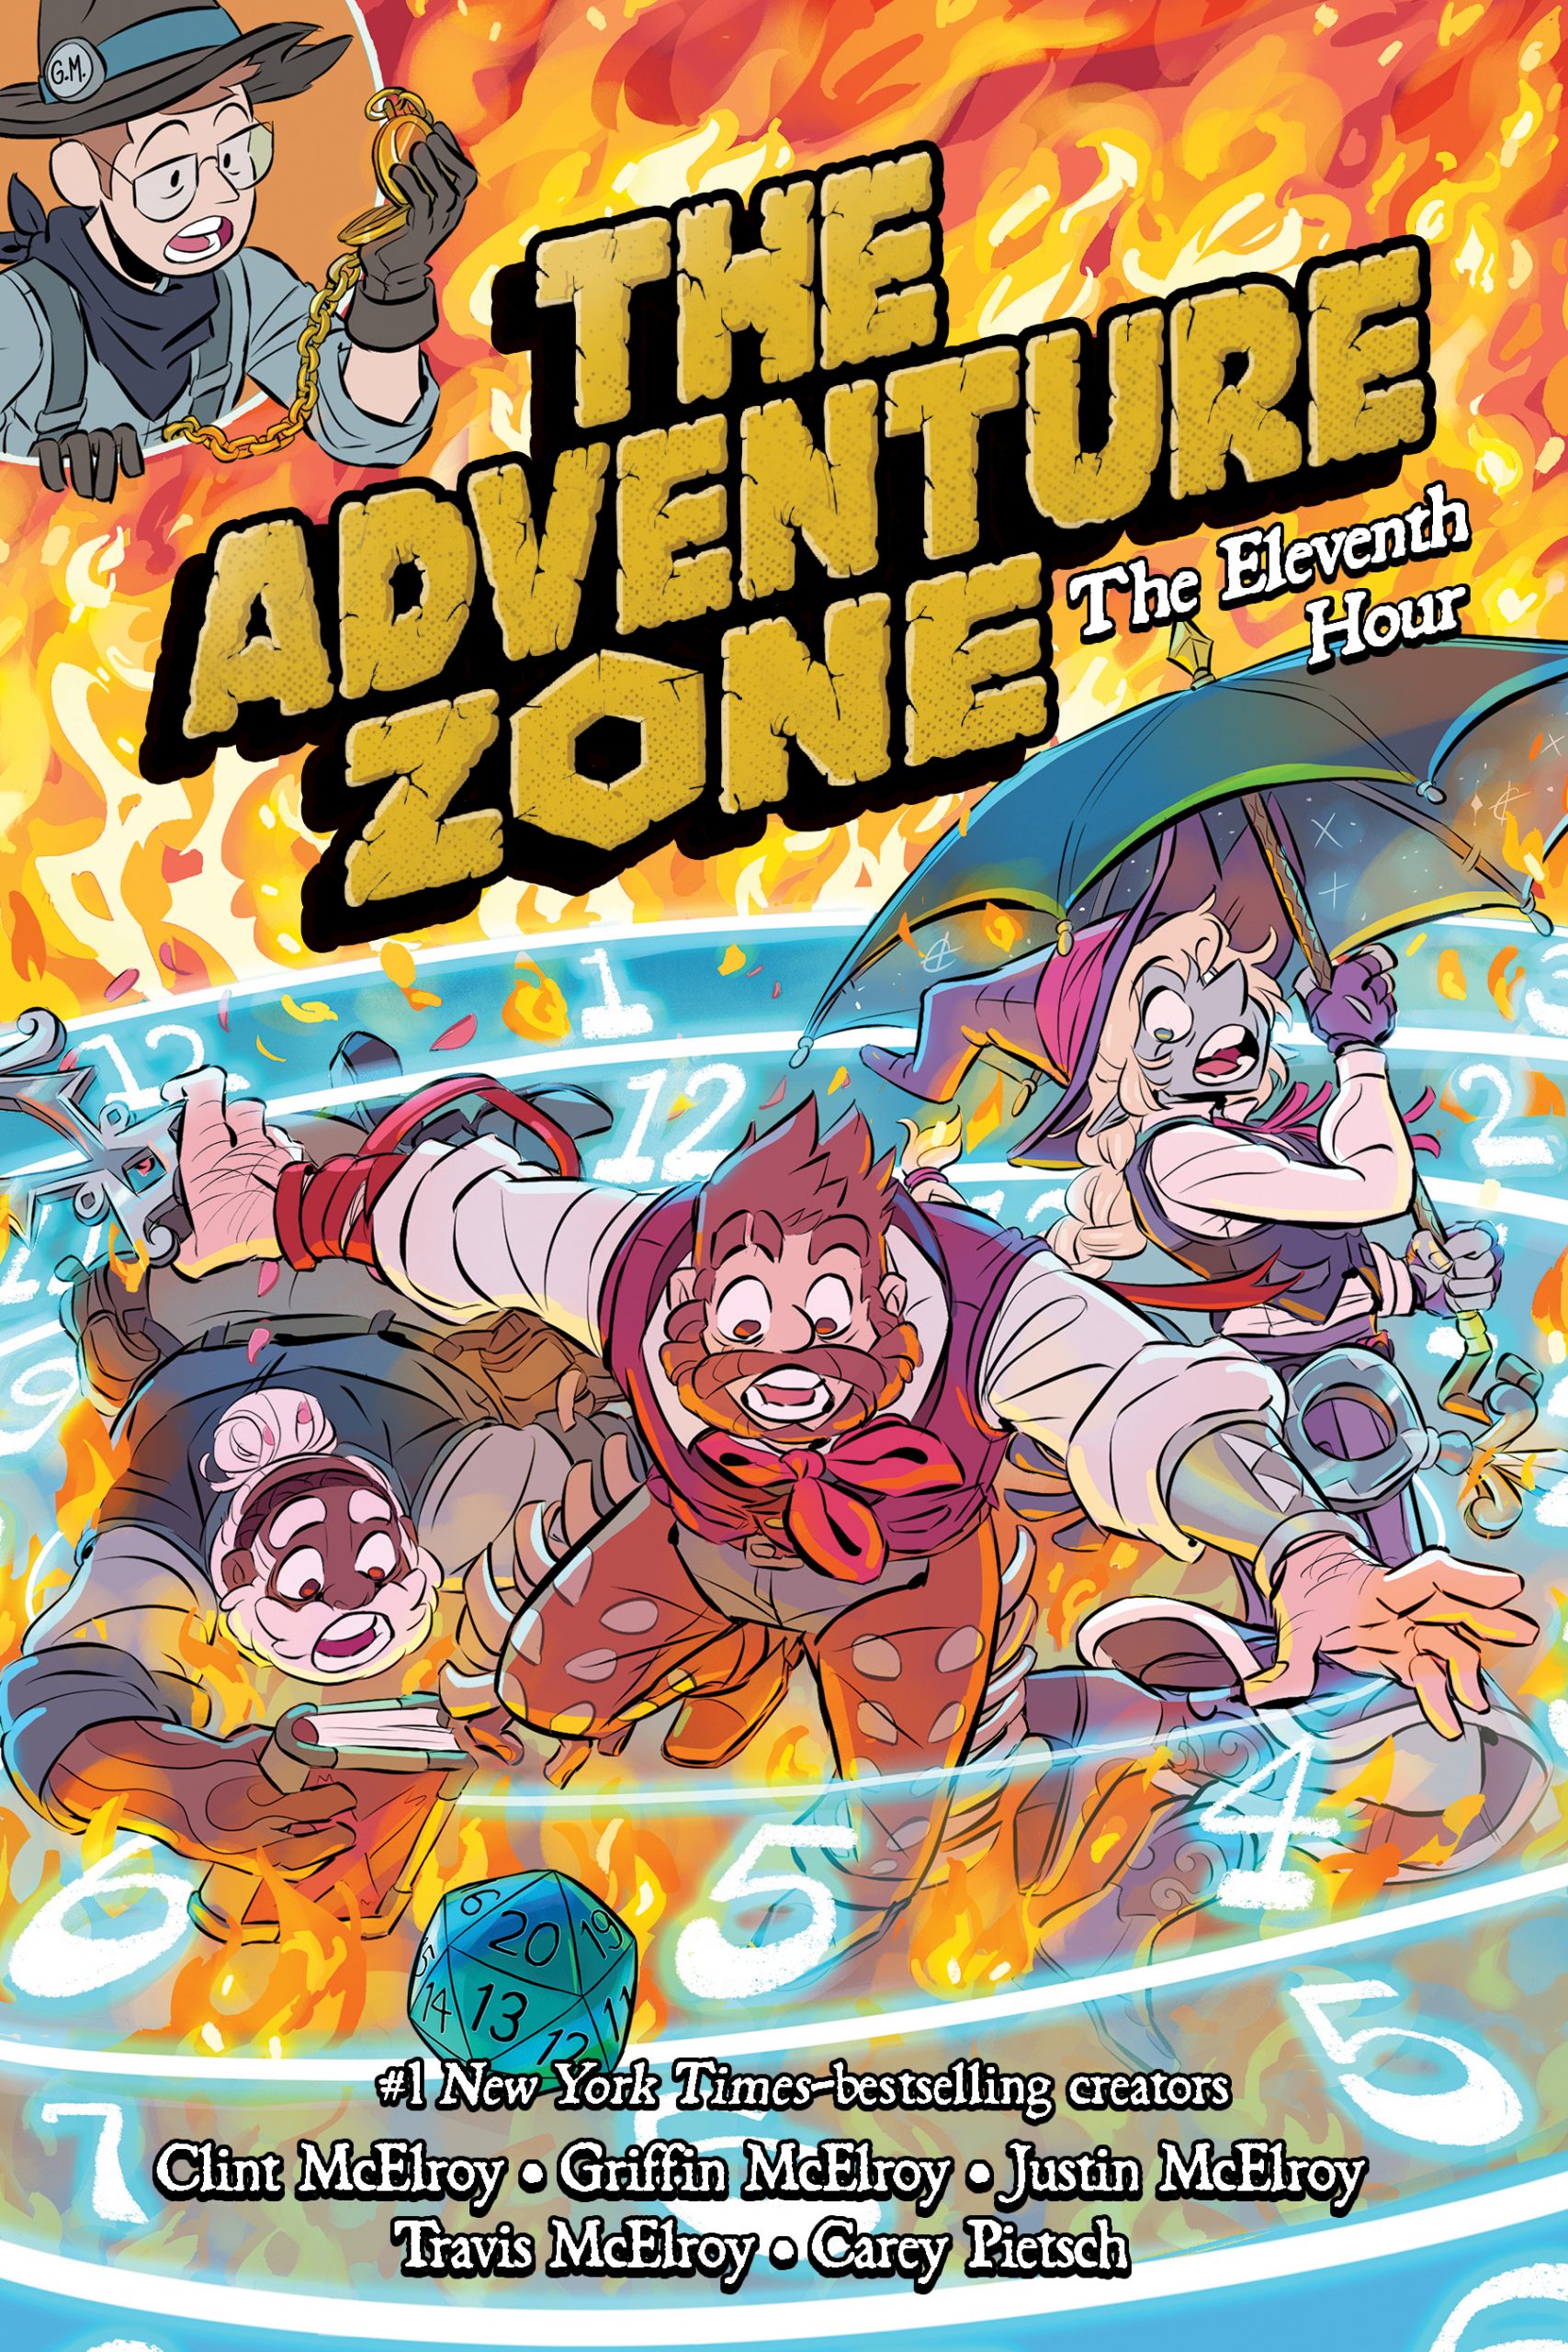 The Adventure Zone Cover